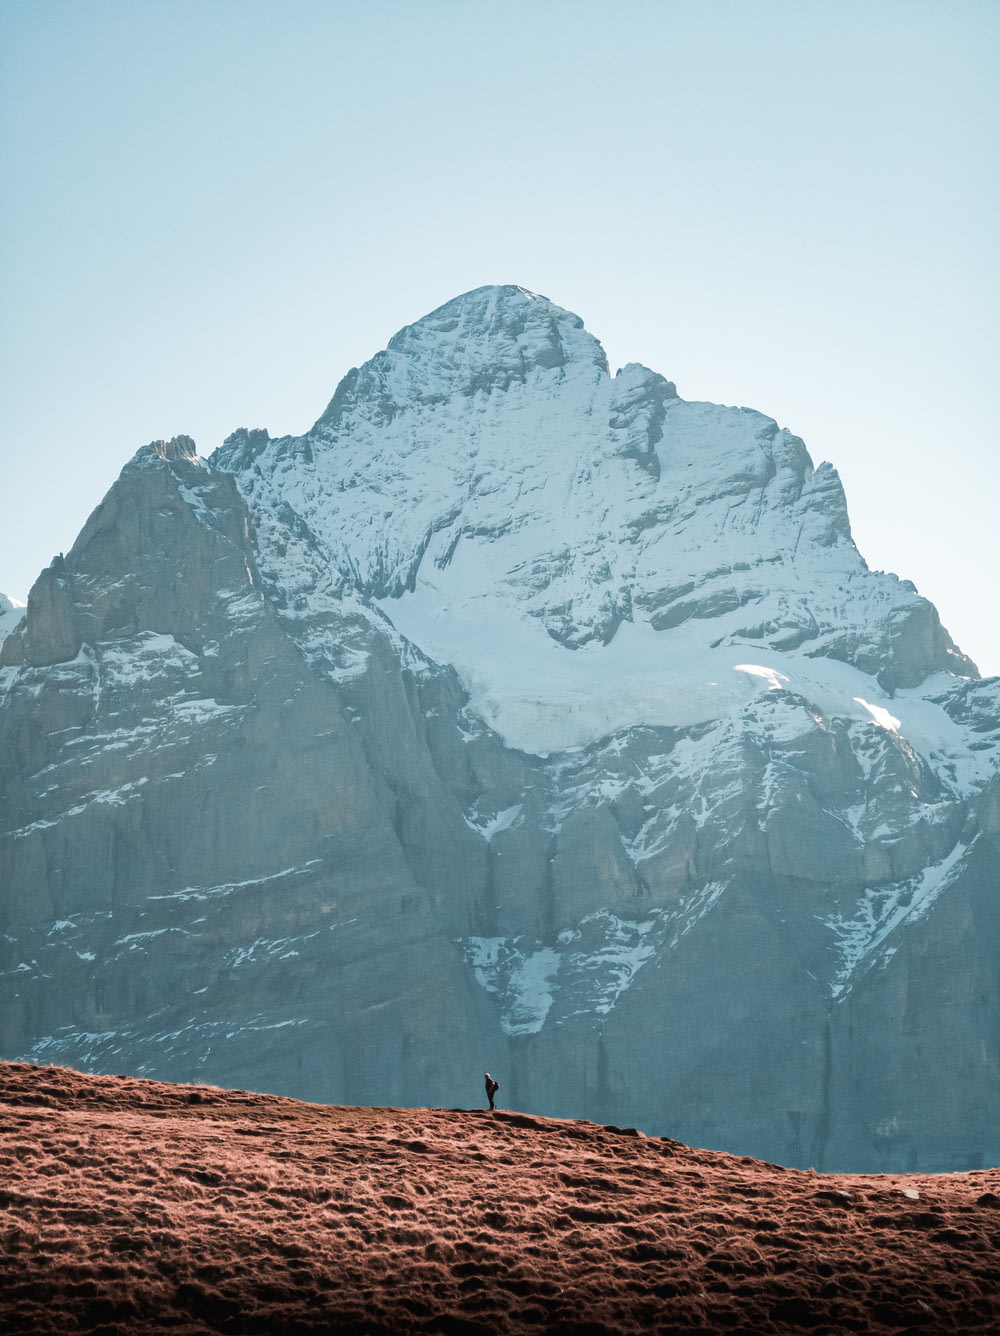 Una persona parada en la cima de una montaña cubierta de nieve